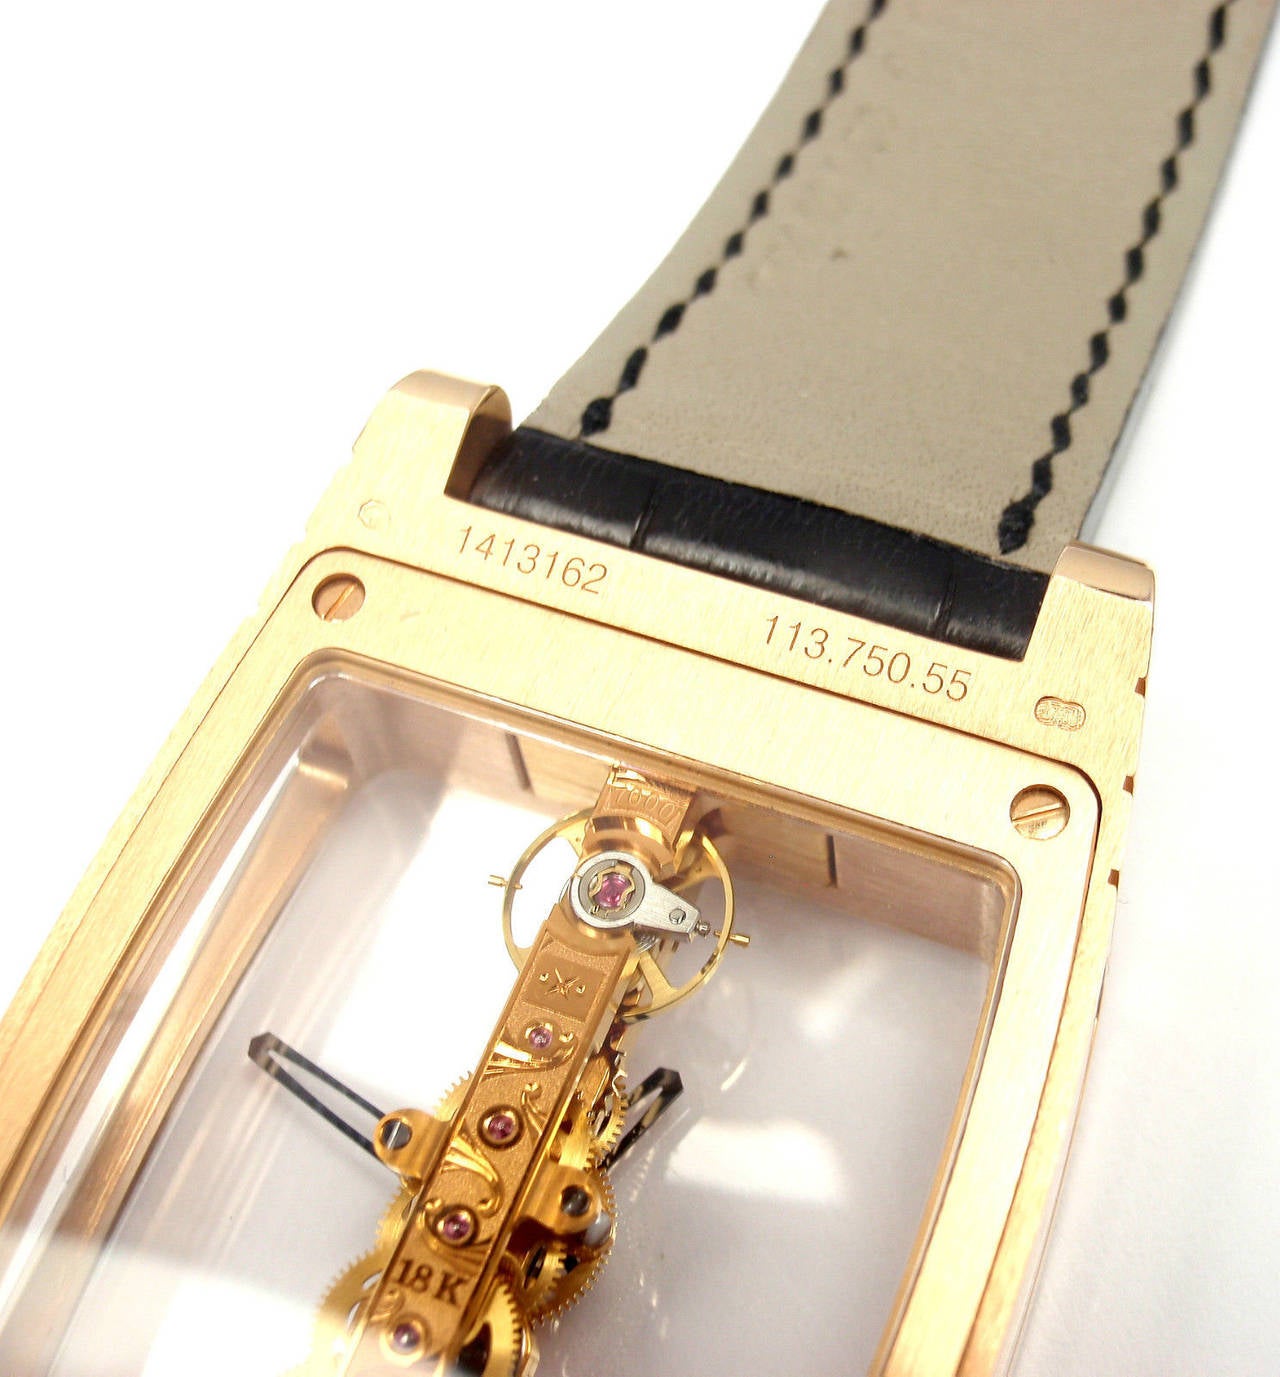 Corum Rose Gold Golden Bridge Large Wristwatch Ref 113.750.55 3